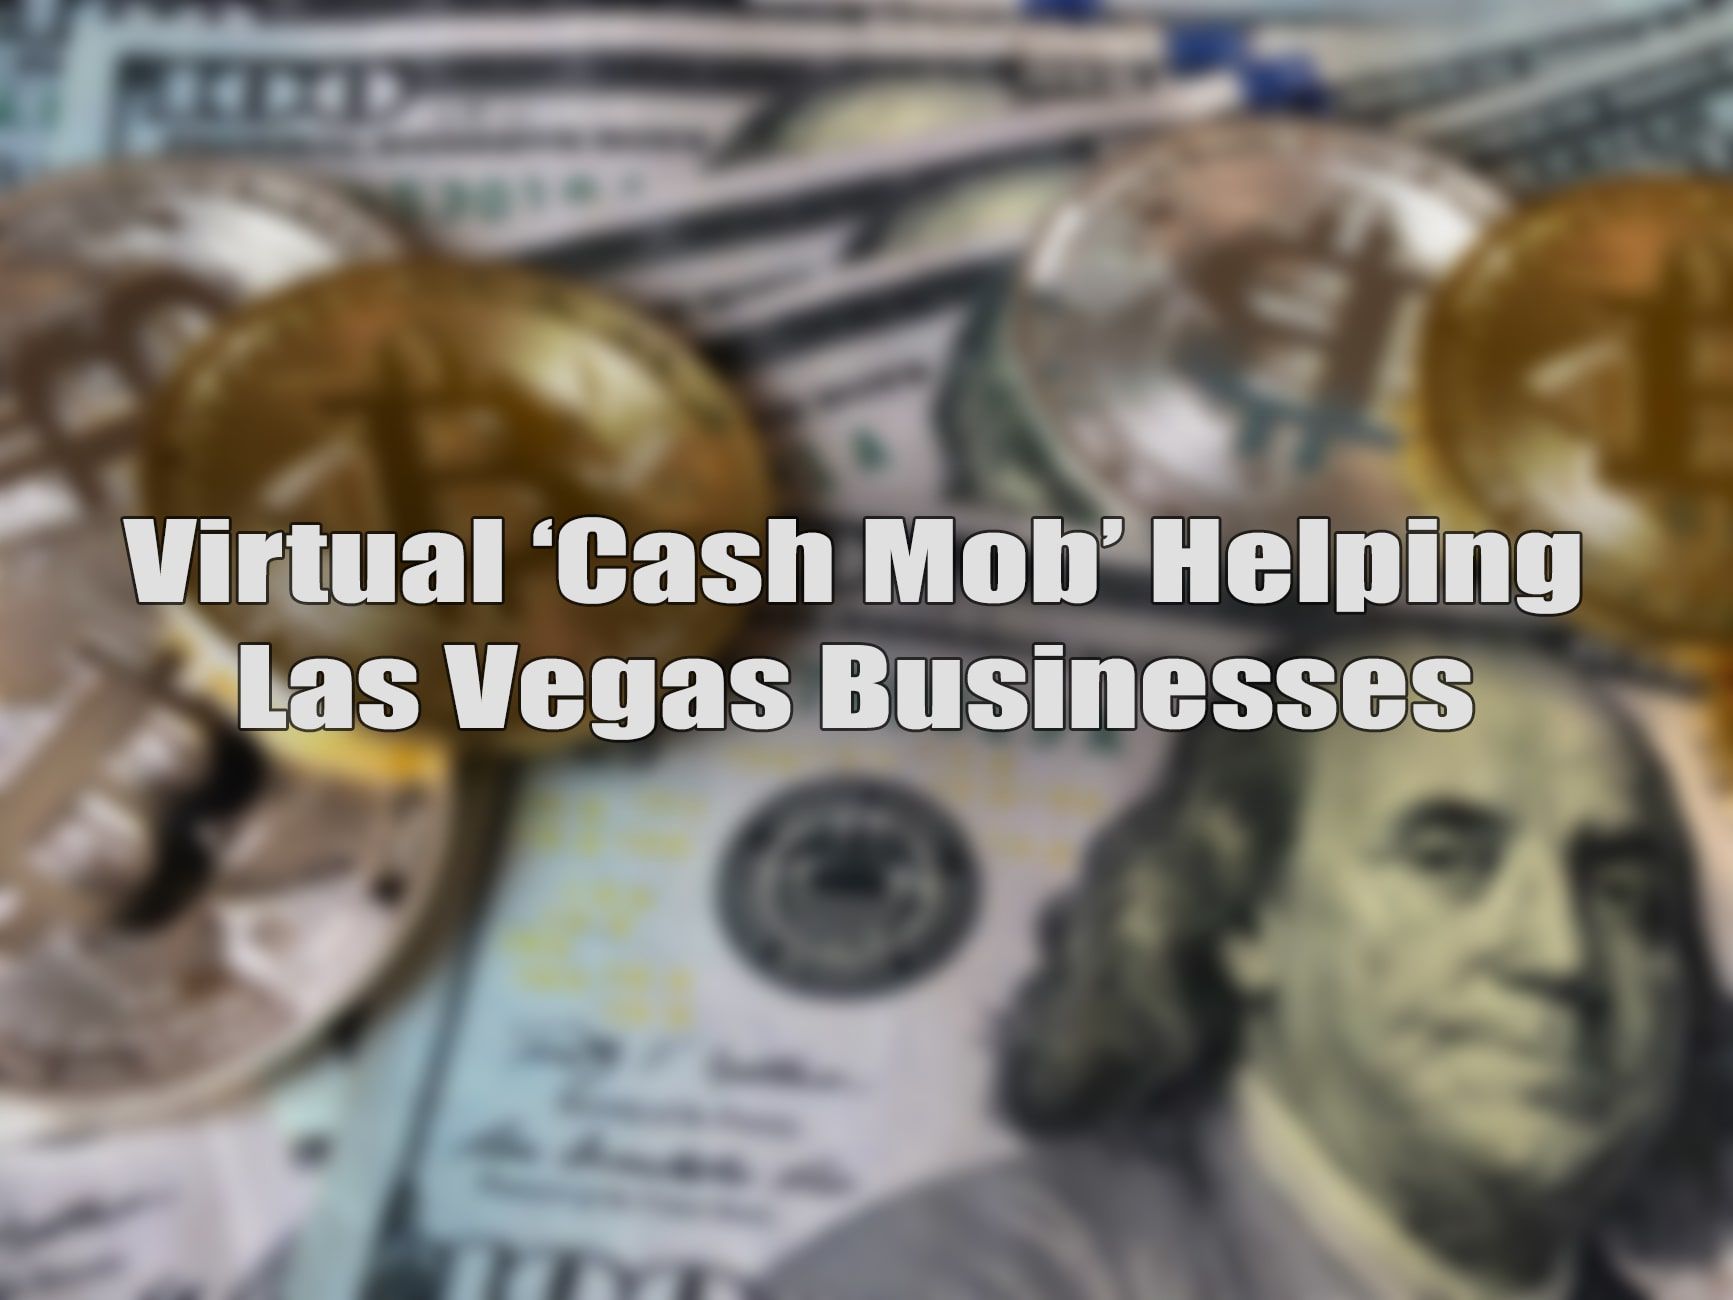 Cash Mob in Las Vegas.jpg